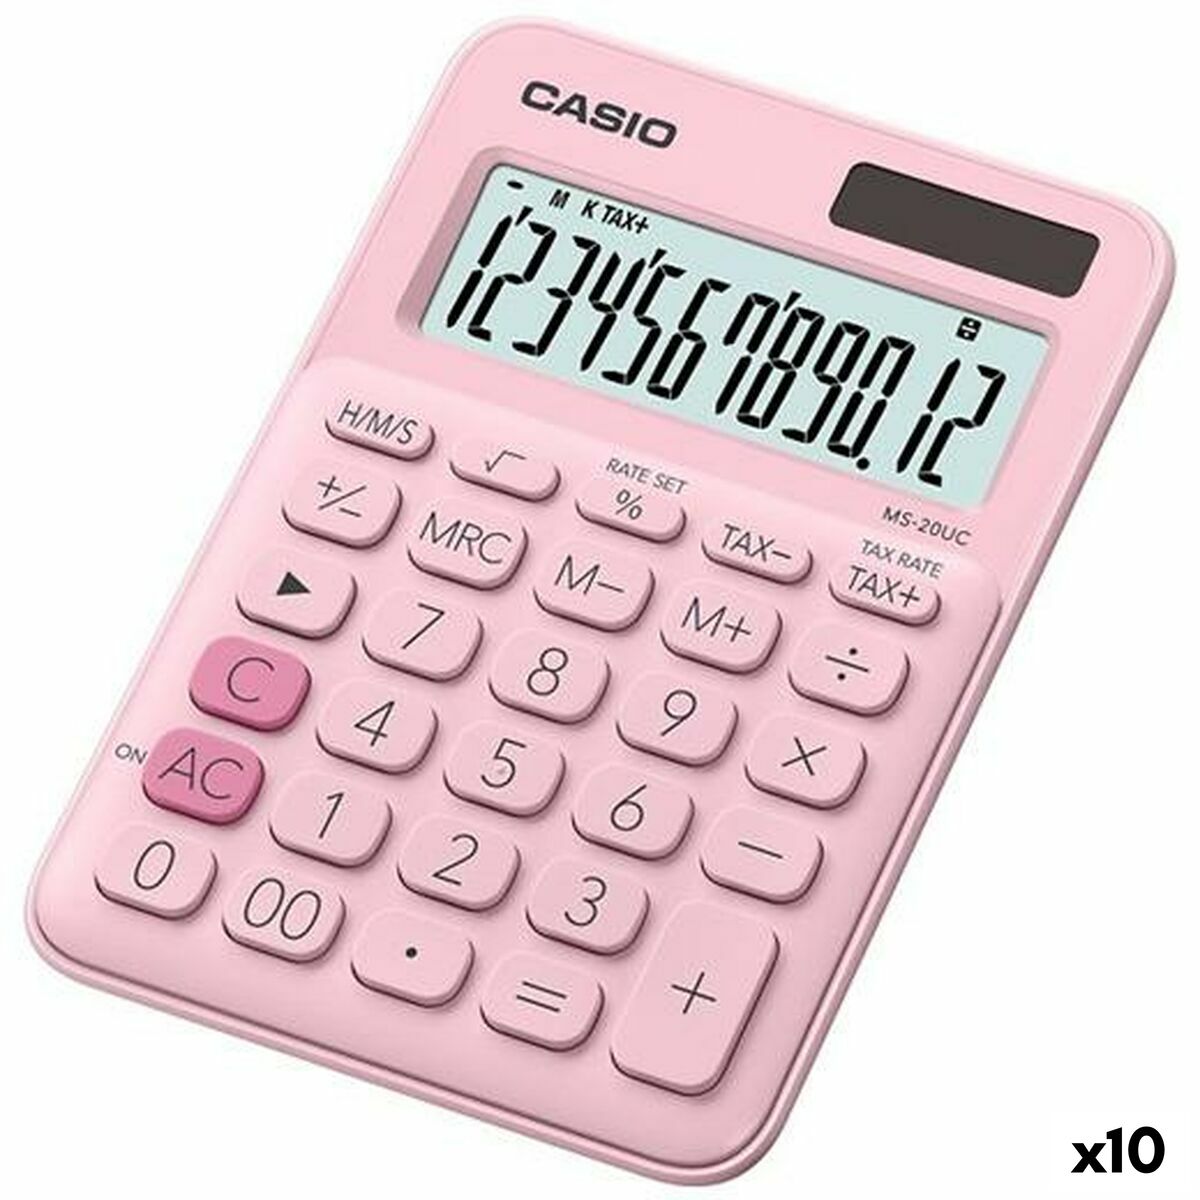 Lommeregner Casio MS-20UC Pink 2,3 x 10,5 x 14,95 cm (10 enheder)